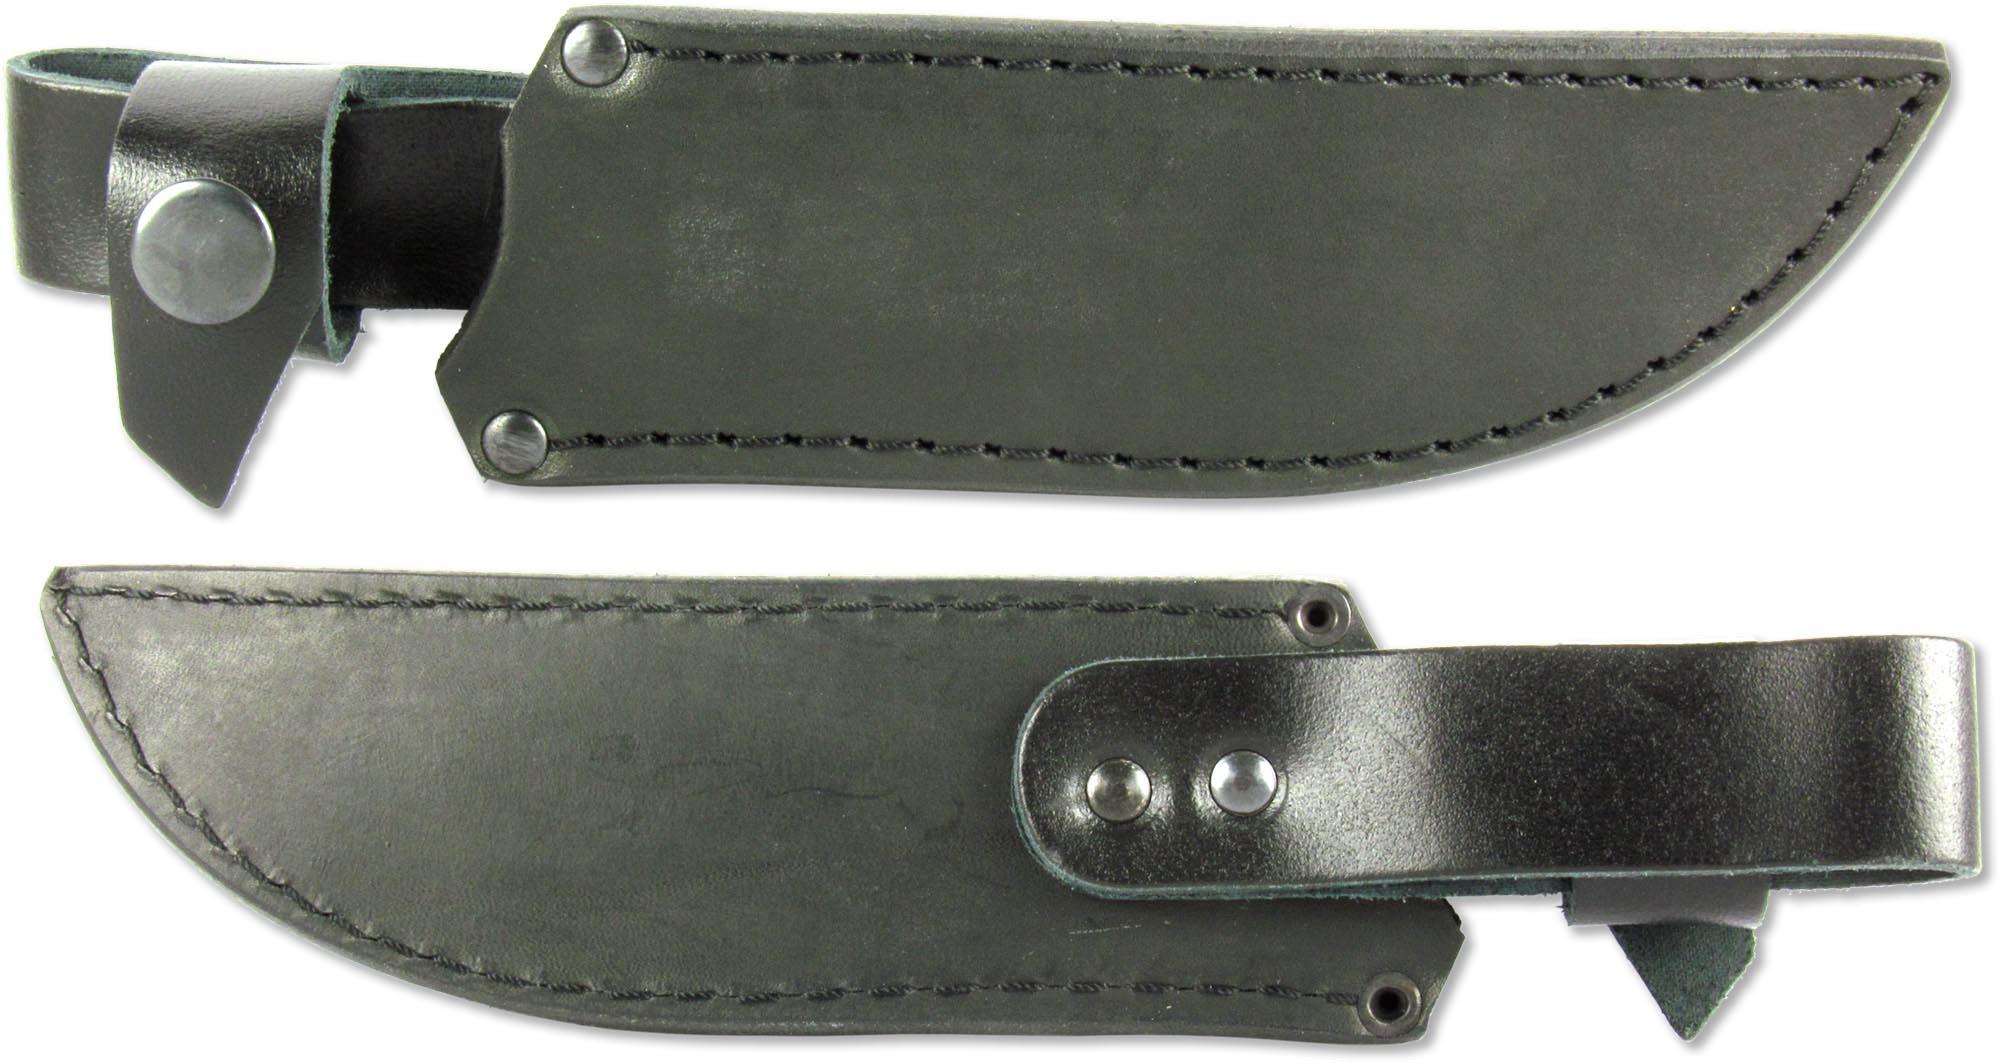 Нож нескладной цельнометаллический Кизляр ТУР-ЦМ (6624) с кожаным чехлом